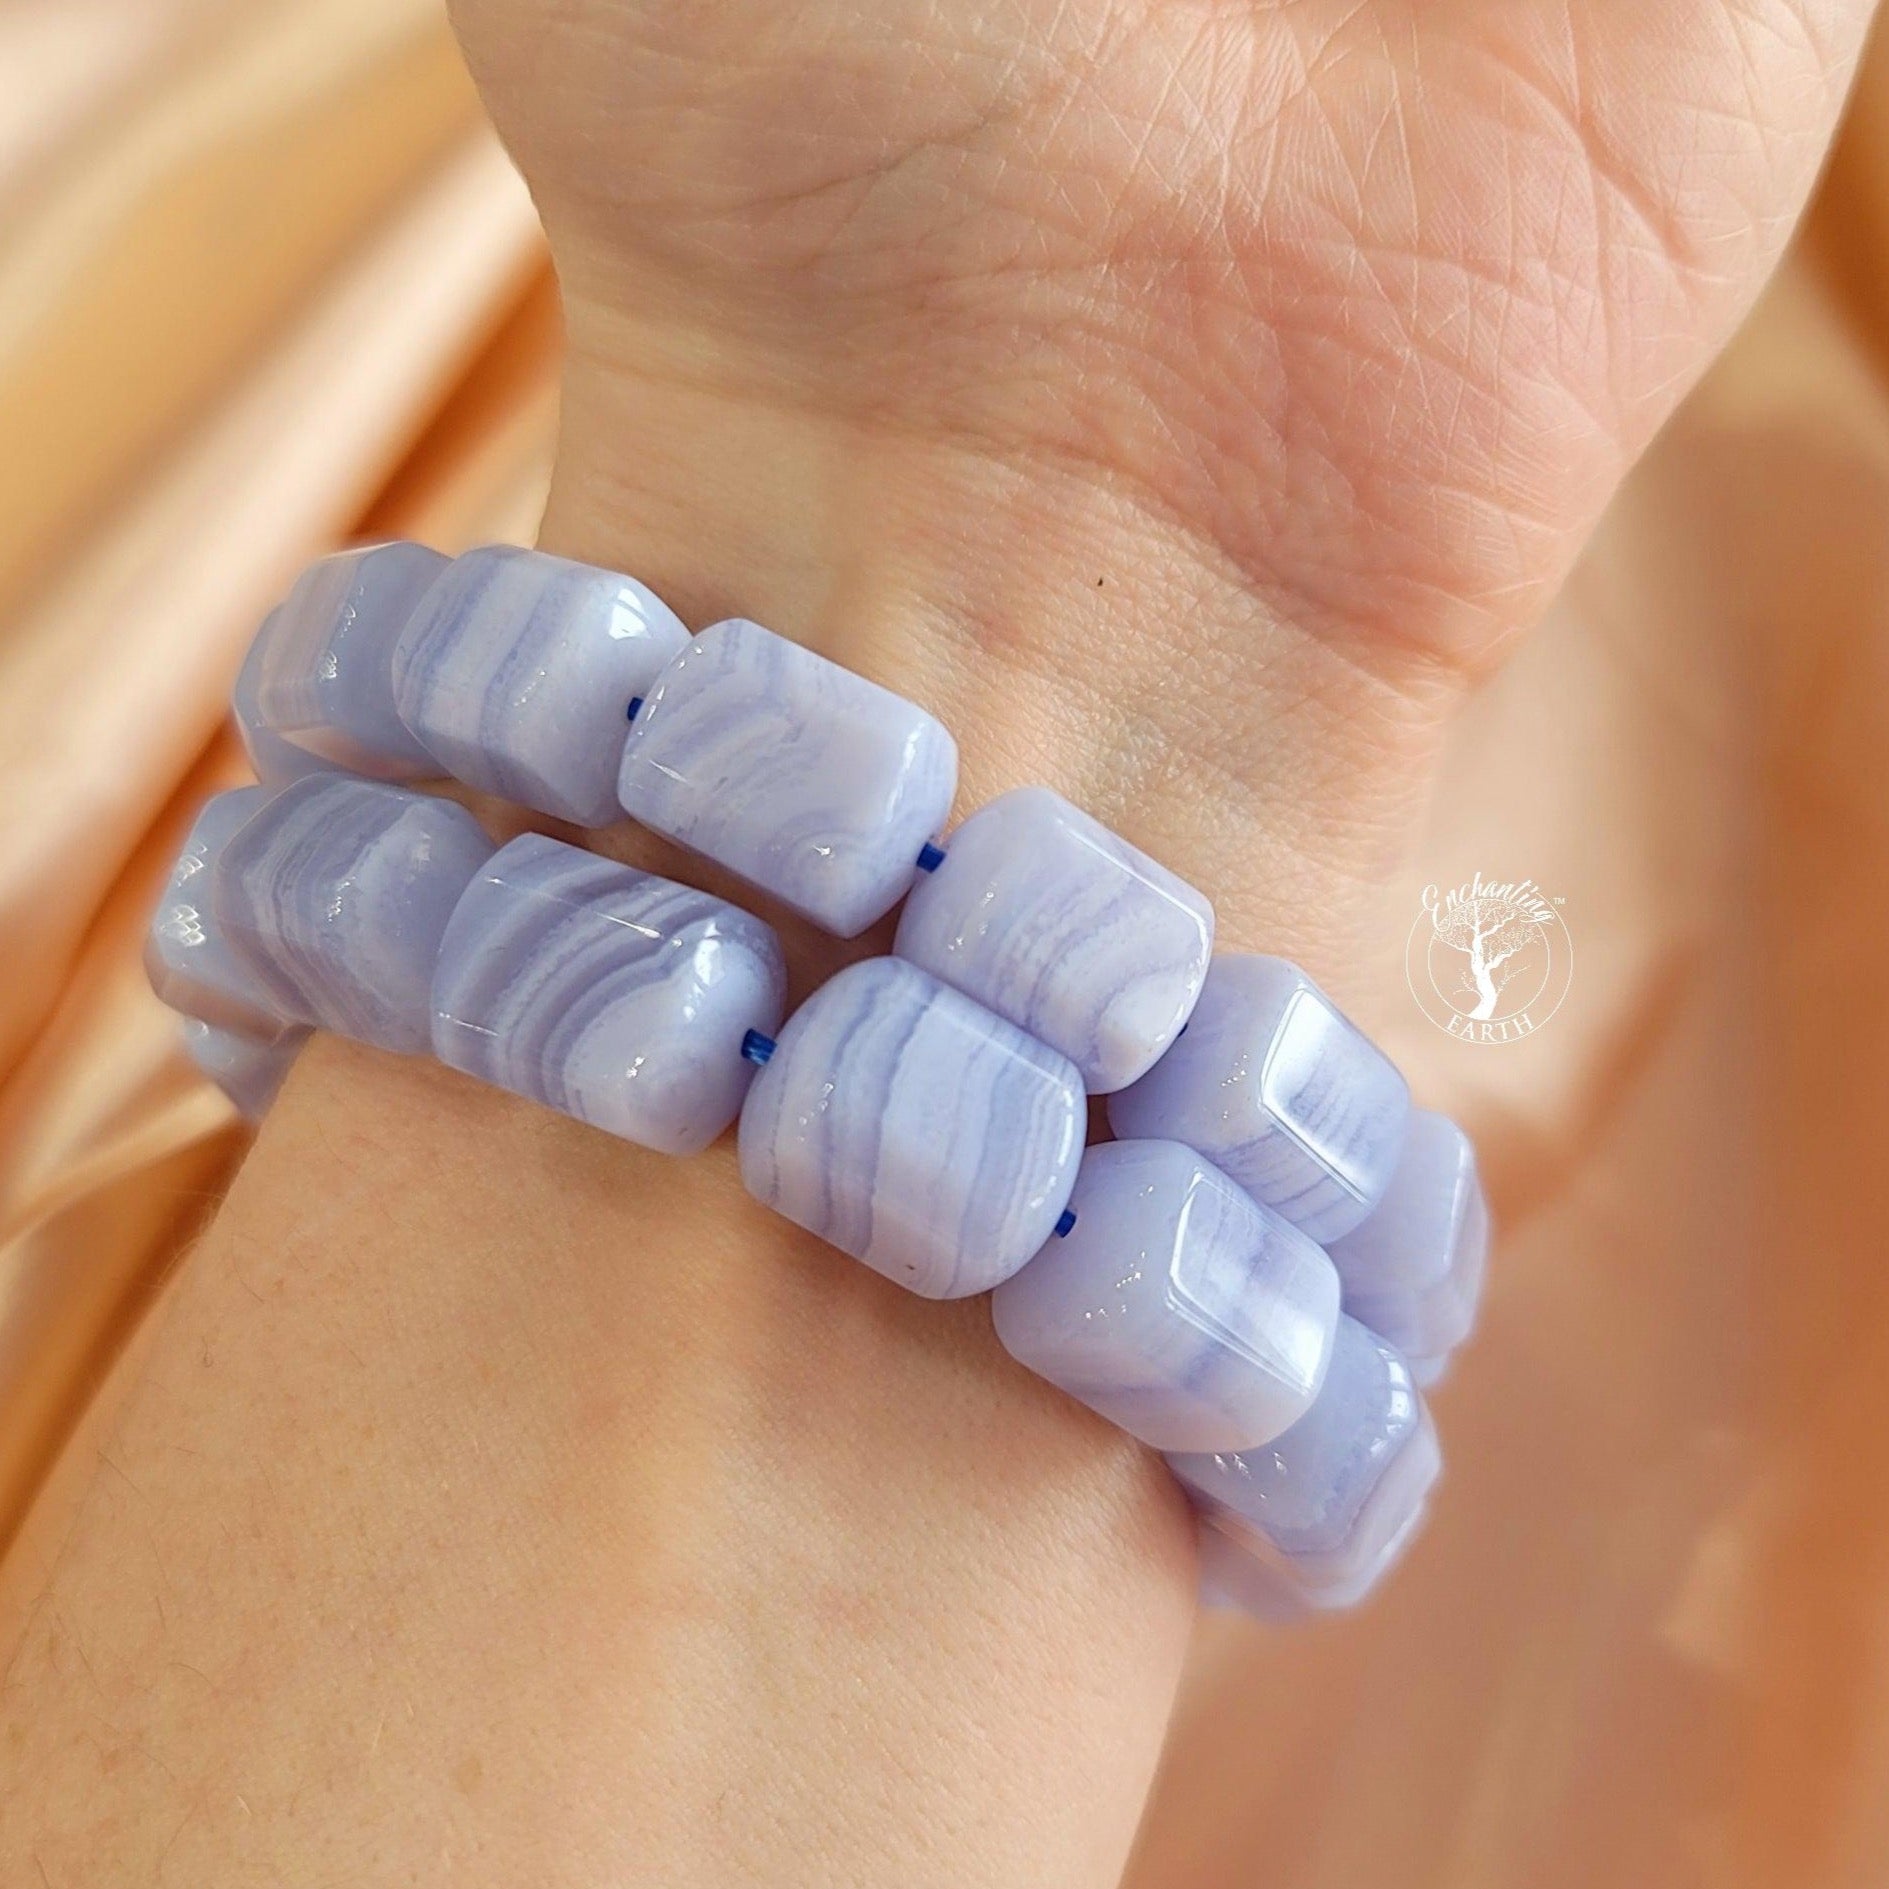 Blue Lace Agate Bracelet for Confident Communication